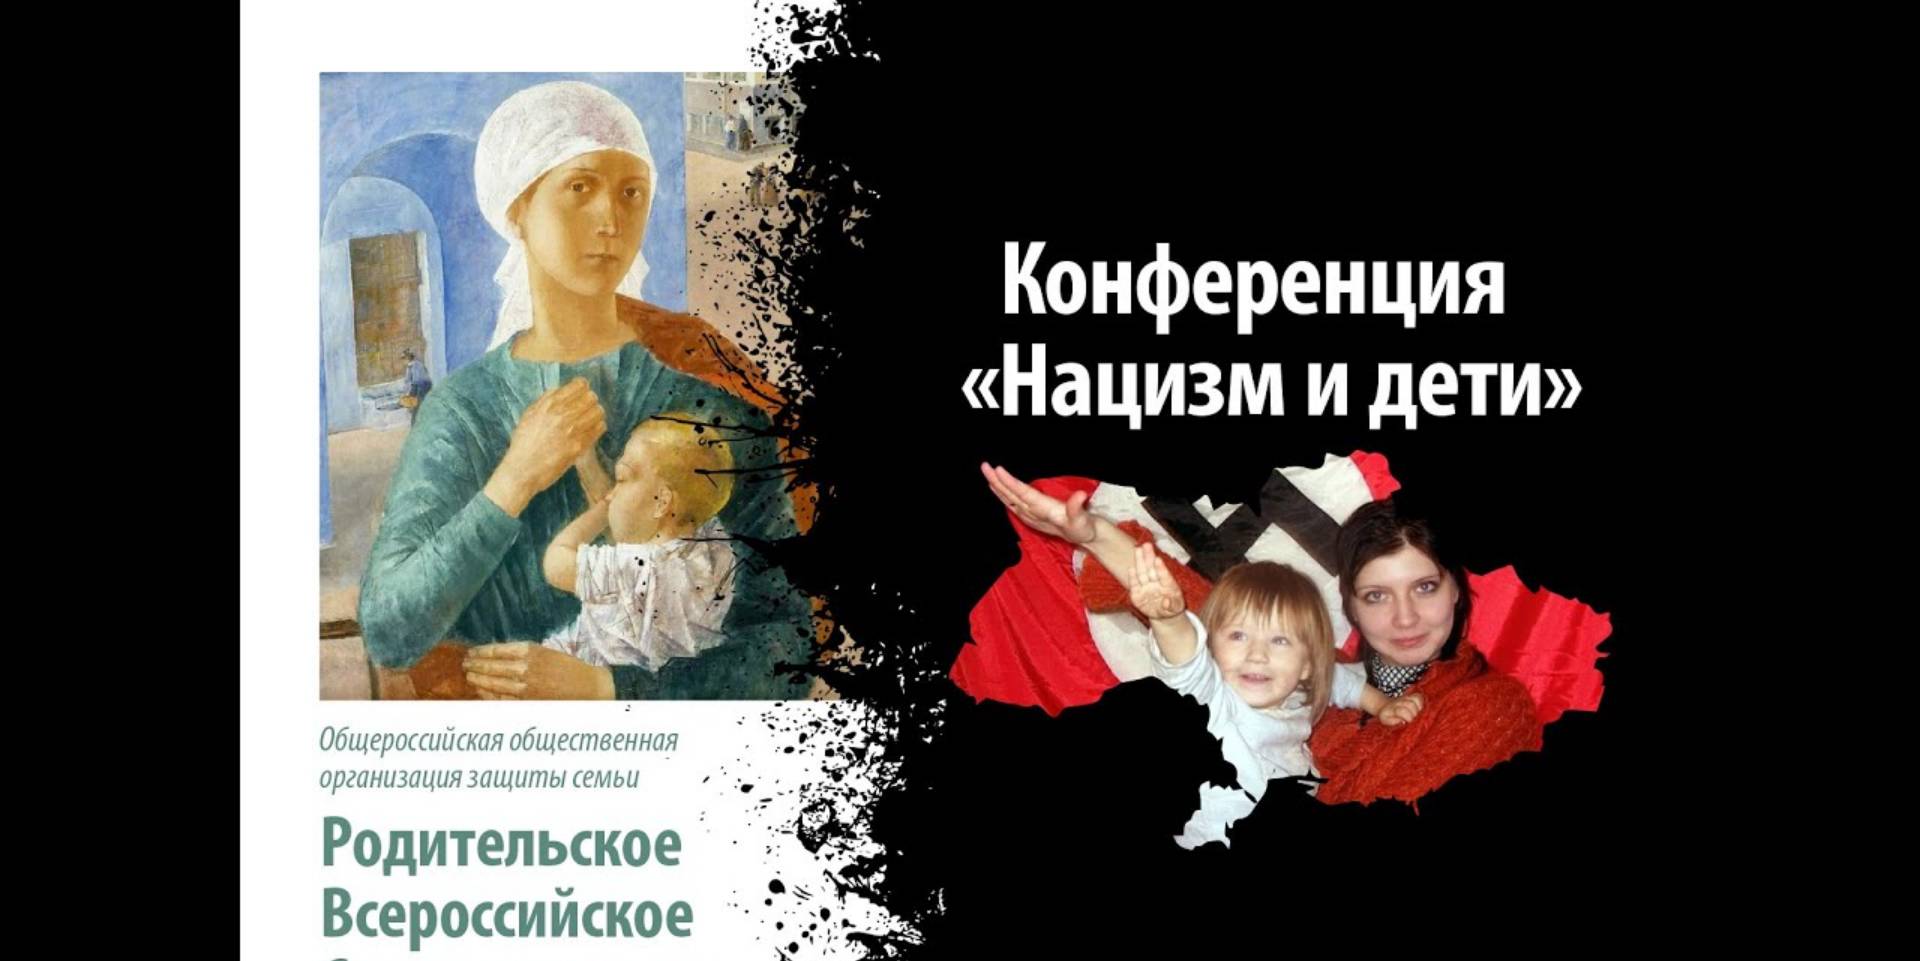  «Нацизм и дети» конференция РВС в Москве, 29 мая, цитата из канала организации